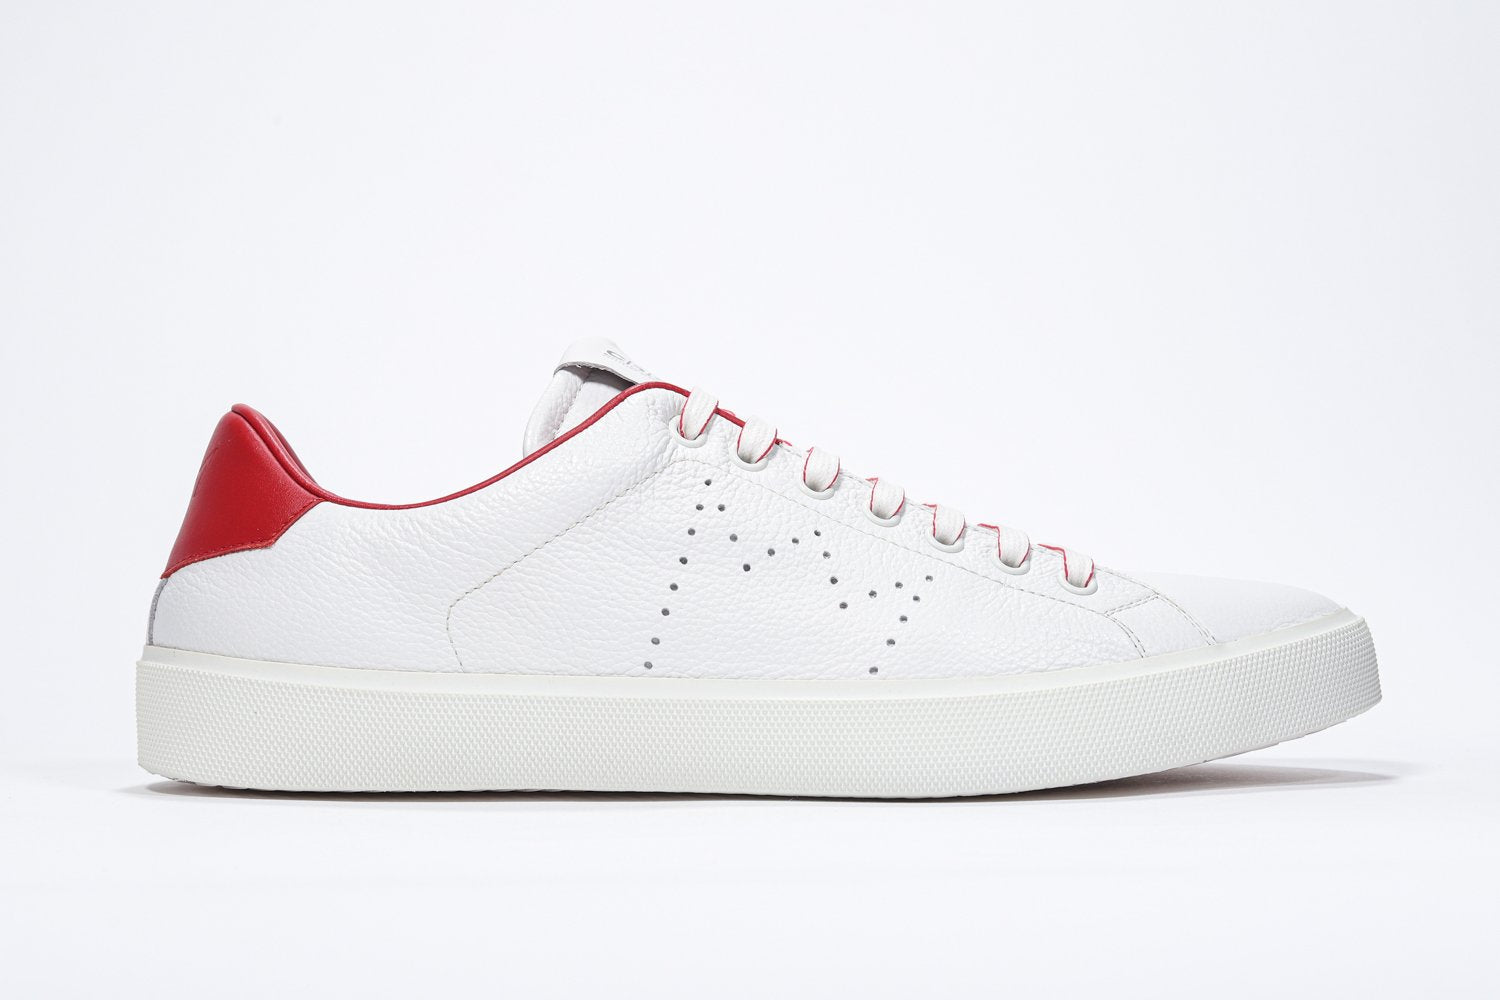 Profilo laterale di BASSE  sneaker  bianco con dettagli rossi e logo della corona traforato sulla tomaia. Tomaia in pelle e suola in gomma bianca.